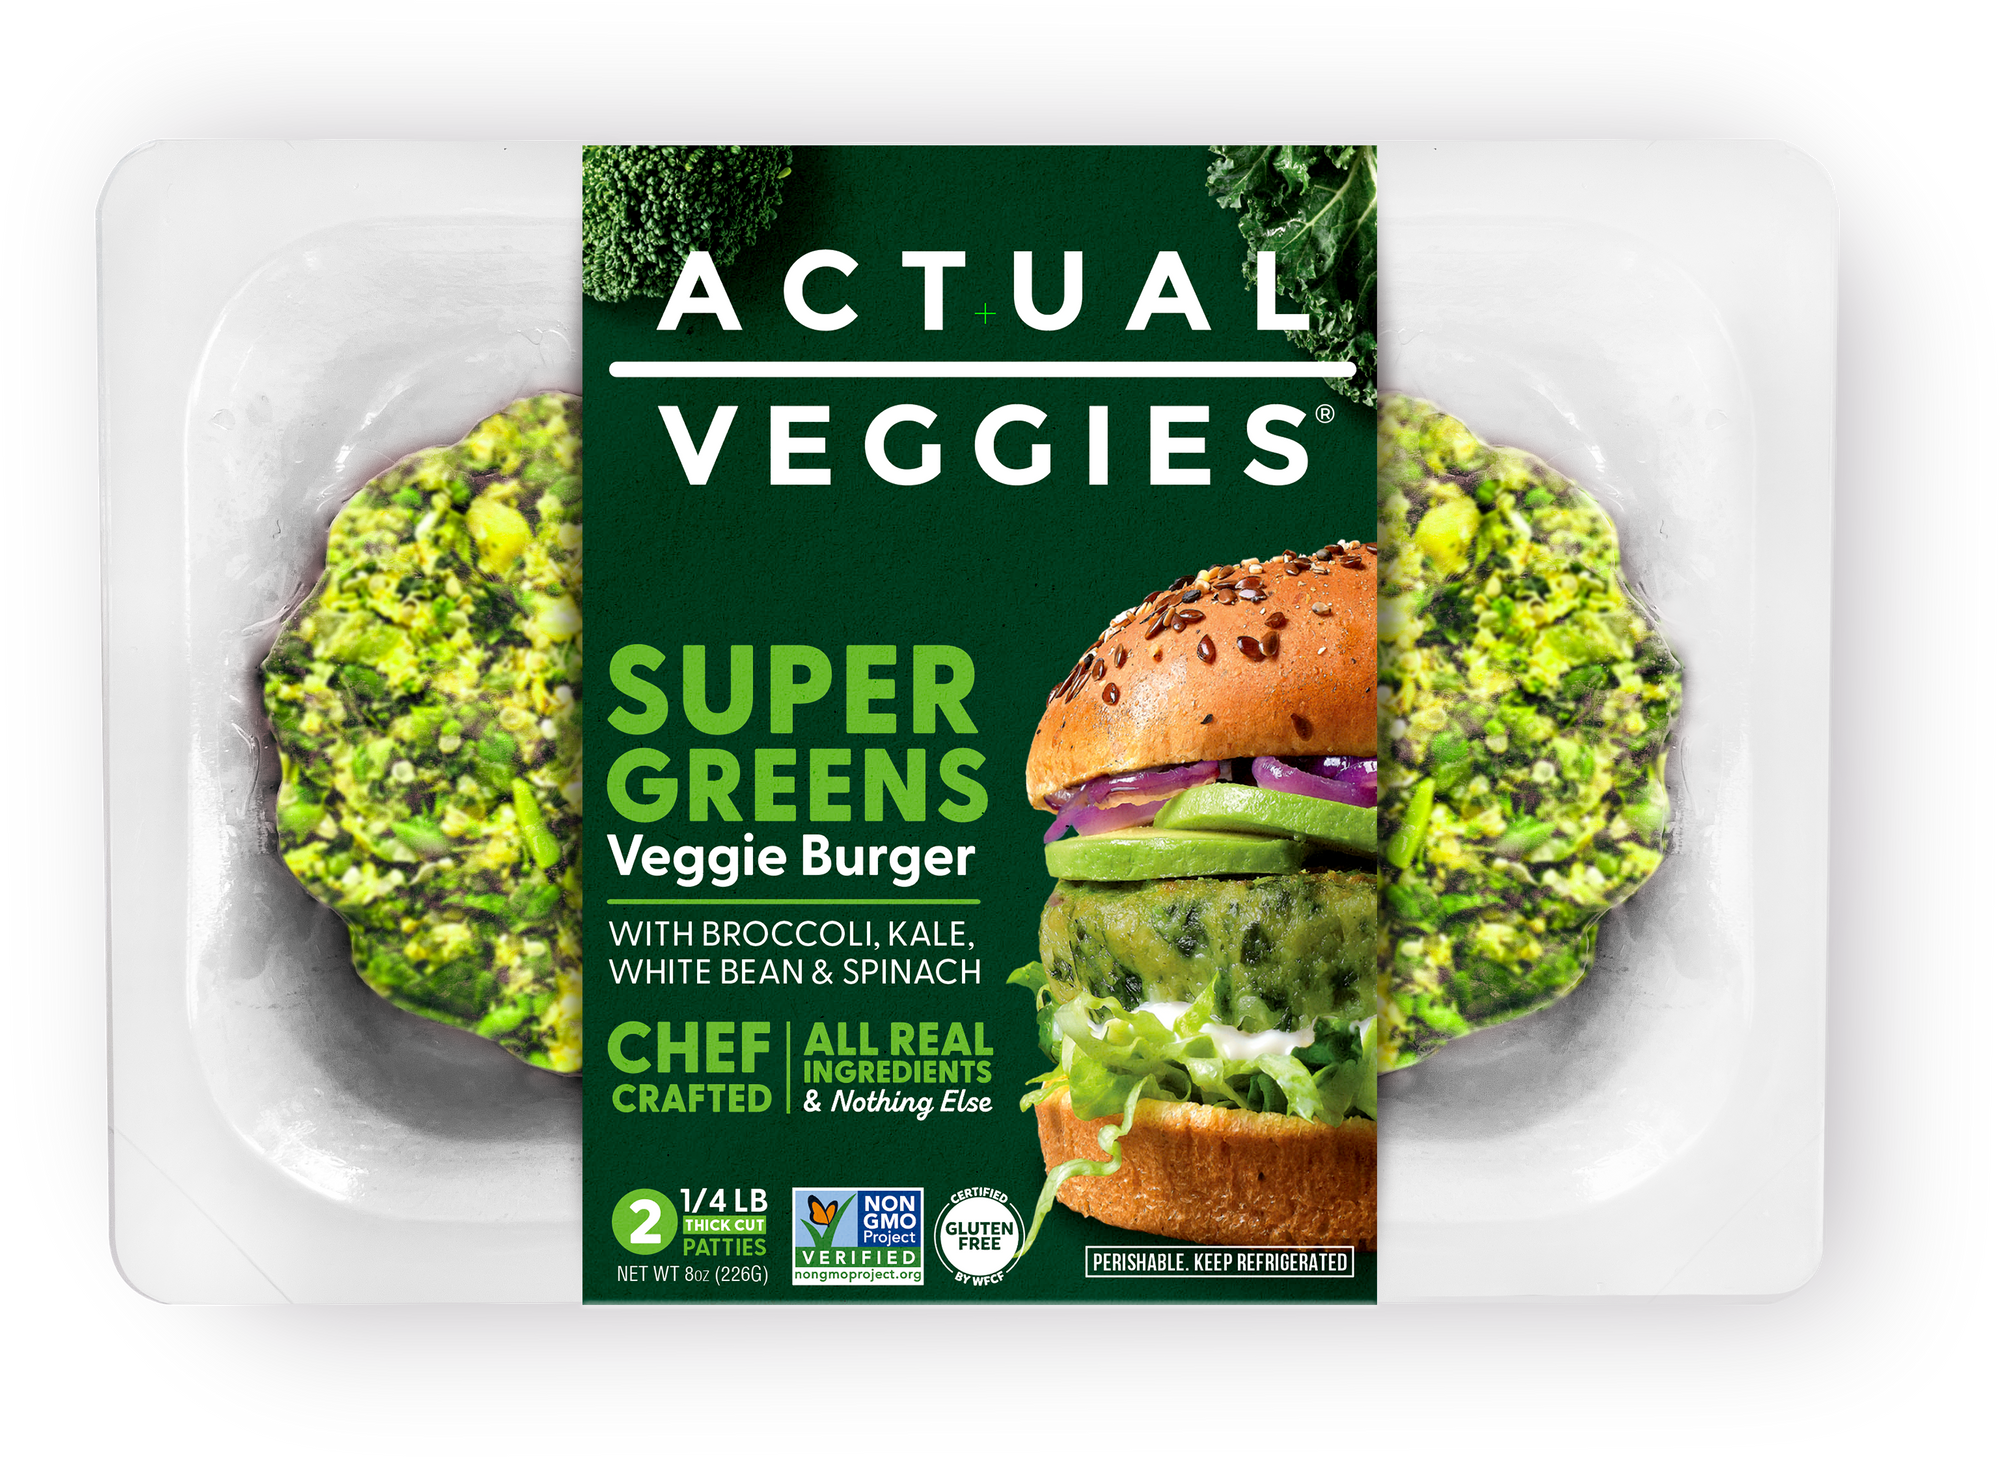 Super Greens VeggieBurgers in Tray